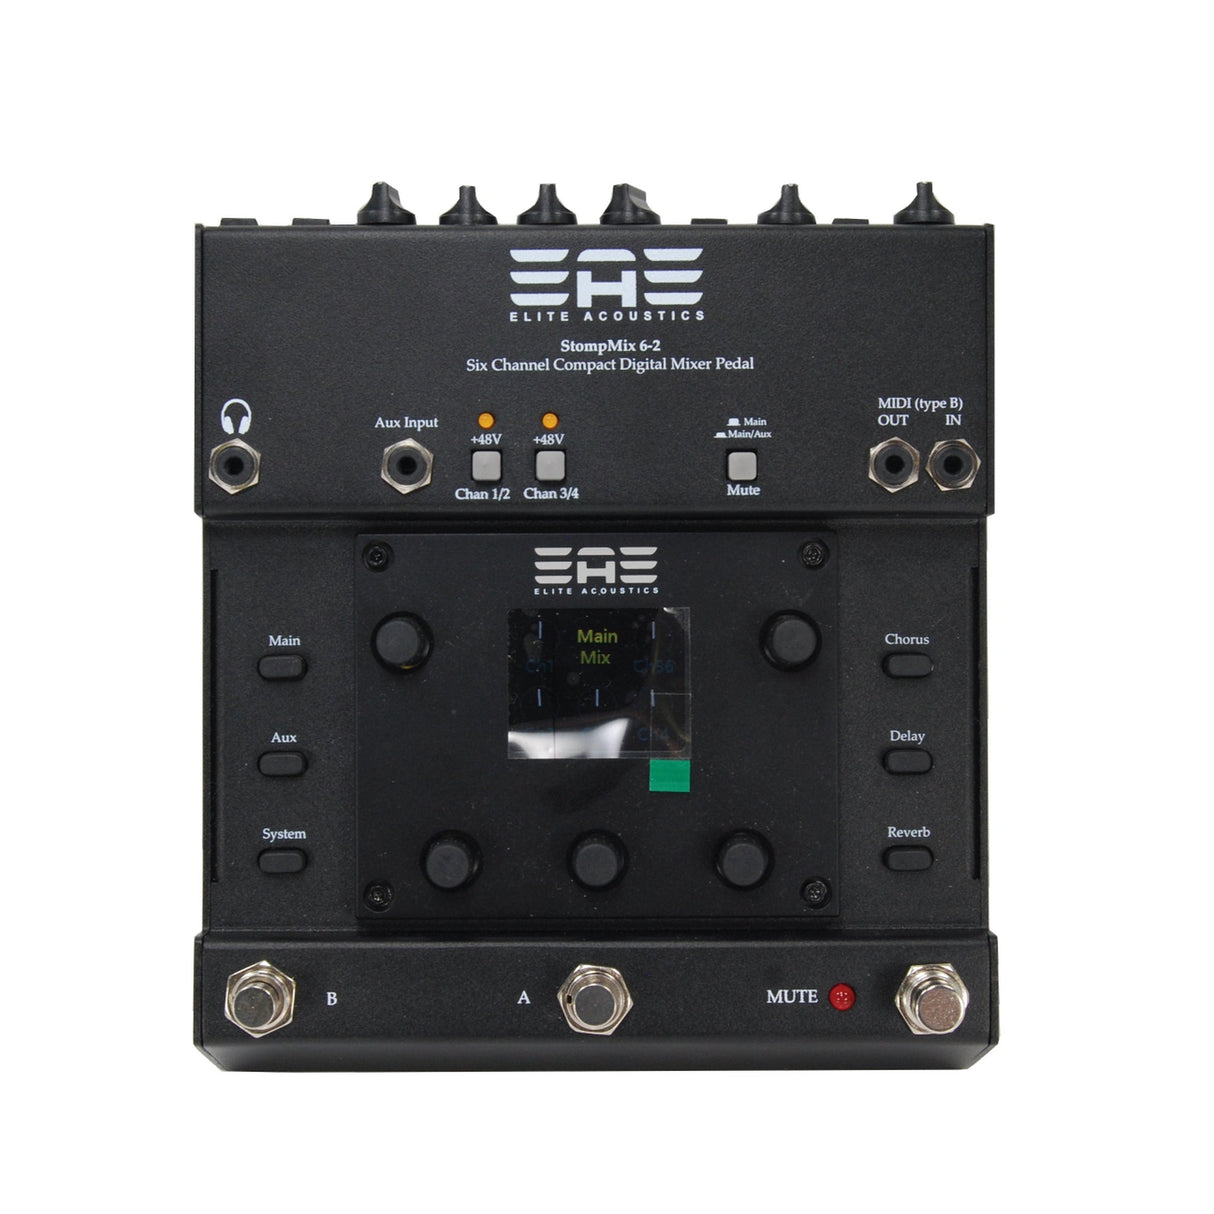 Elite Acoustics StompMix 6-2 6-Channel Compact Digital Mixer Pedal